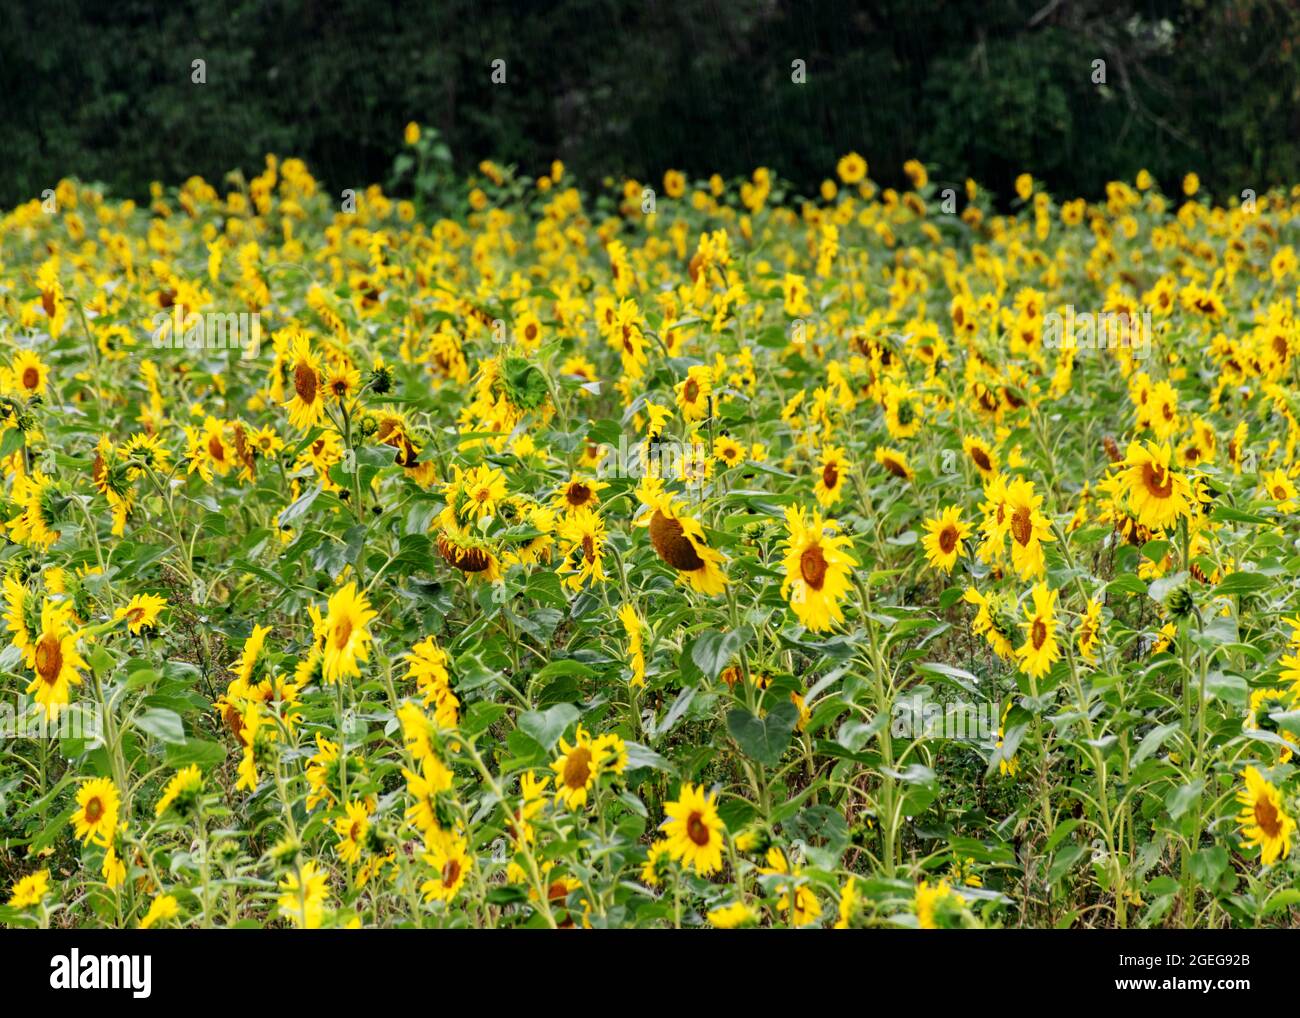 soleado paisaje veraniego con girasoles amarillos, campo de girasol empapado de lluvia Foto de stock